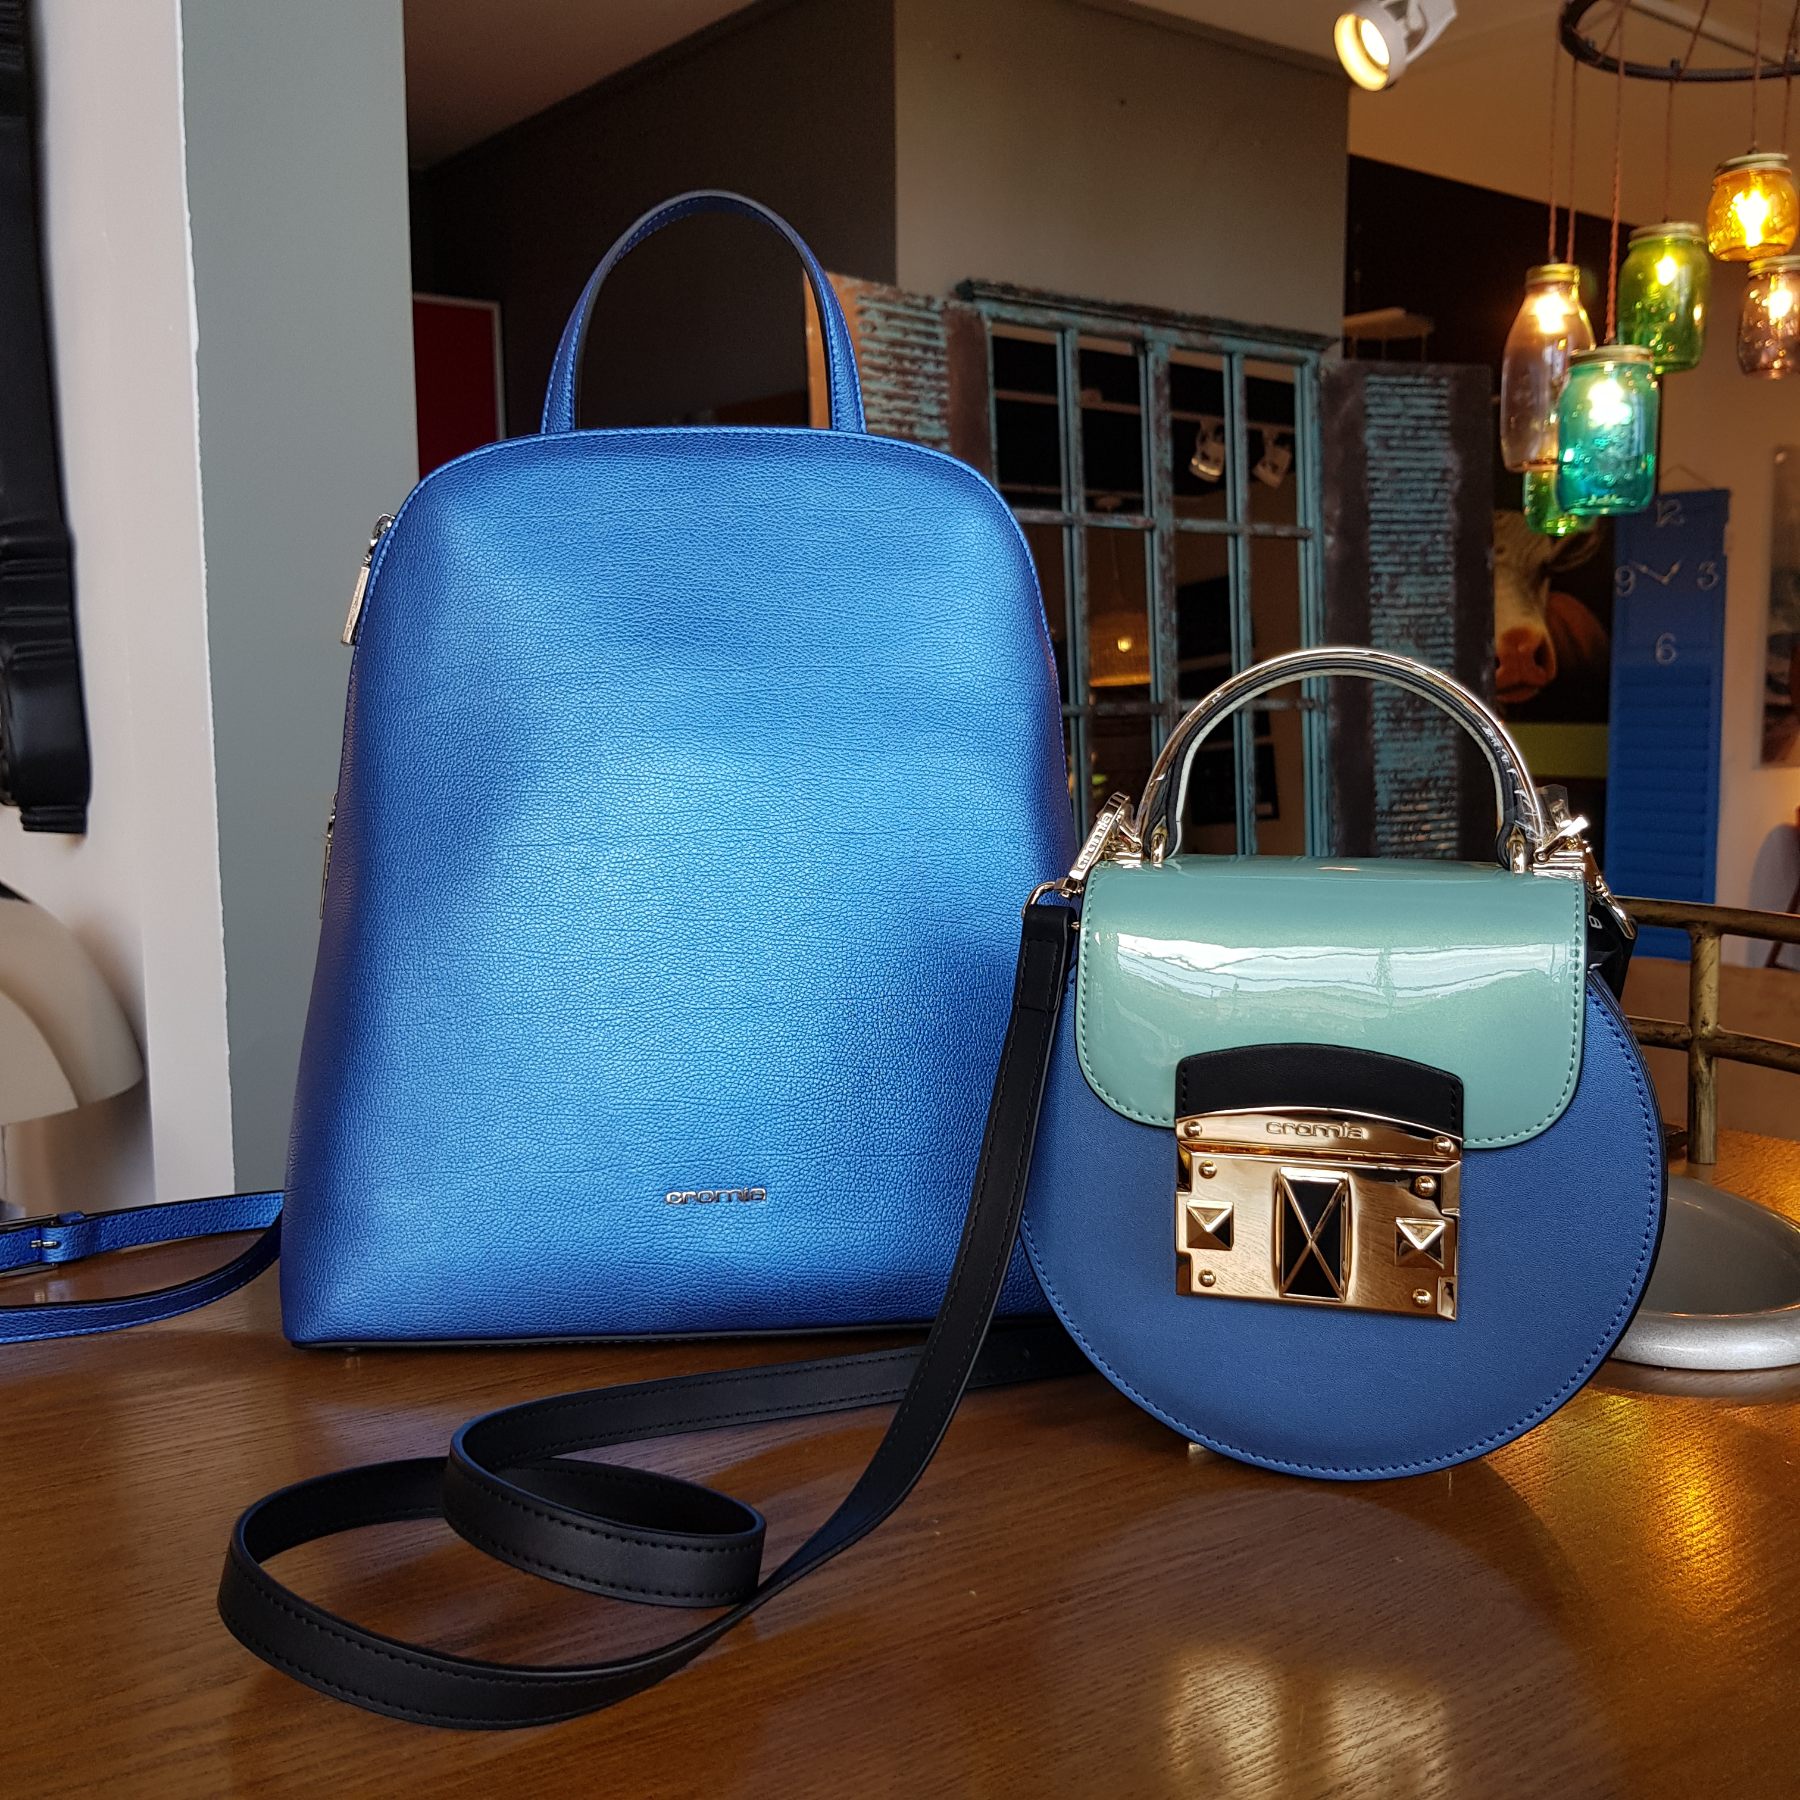 Итальянские сумочки Cromia (Кромиа) из натуральной кожи из коллекций 2020 года выполненные в цвете синий электрик